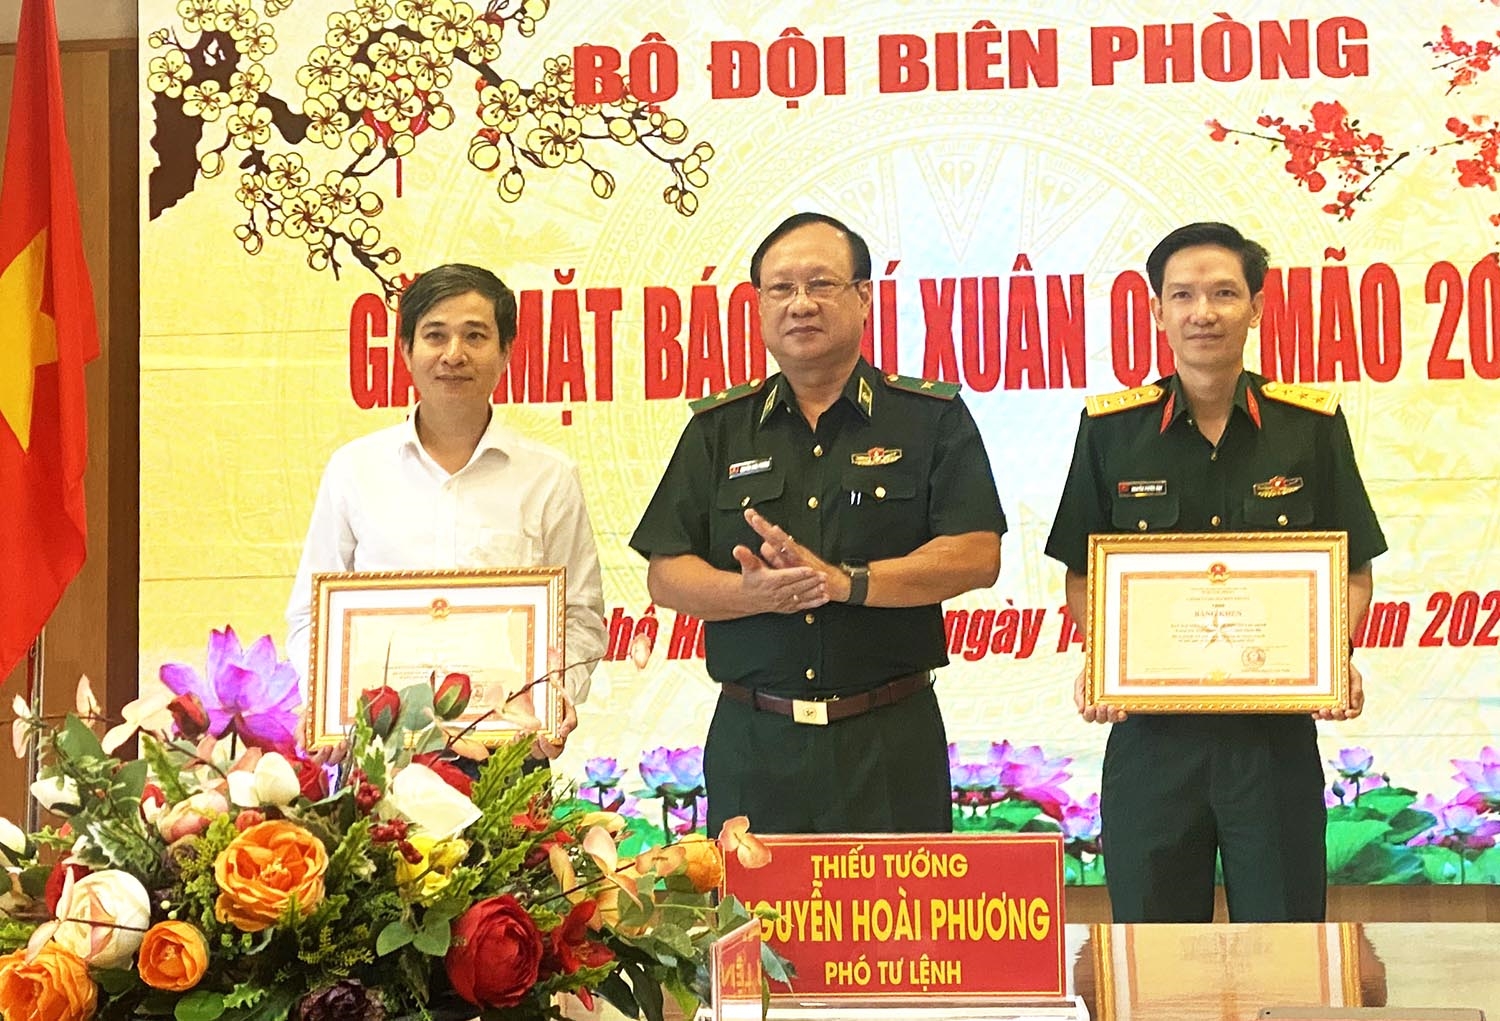 Thiếu tướng Nguyễn Hoài Phương - Phó Tư lệnh BĐBP trao Bằng khen đến 2 tập thể có nhiều đóng góp cho công tác tuyên truyền về biên giới và BĐBP năm 2022